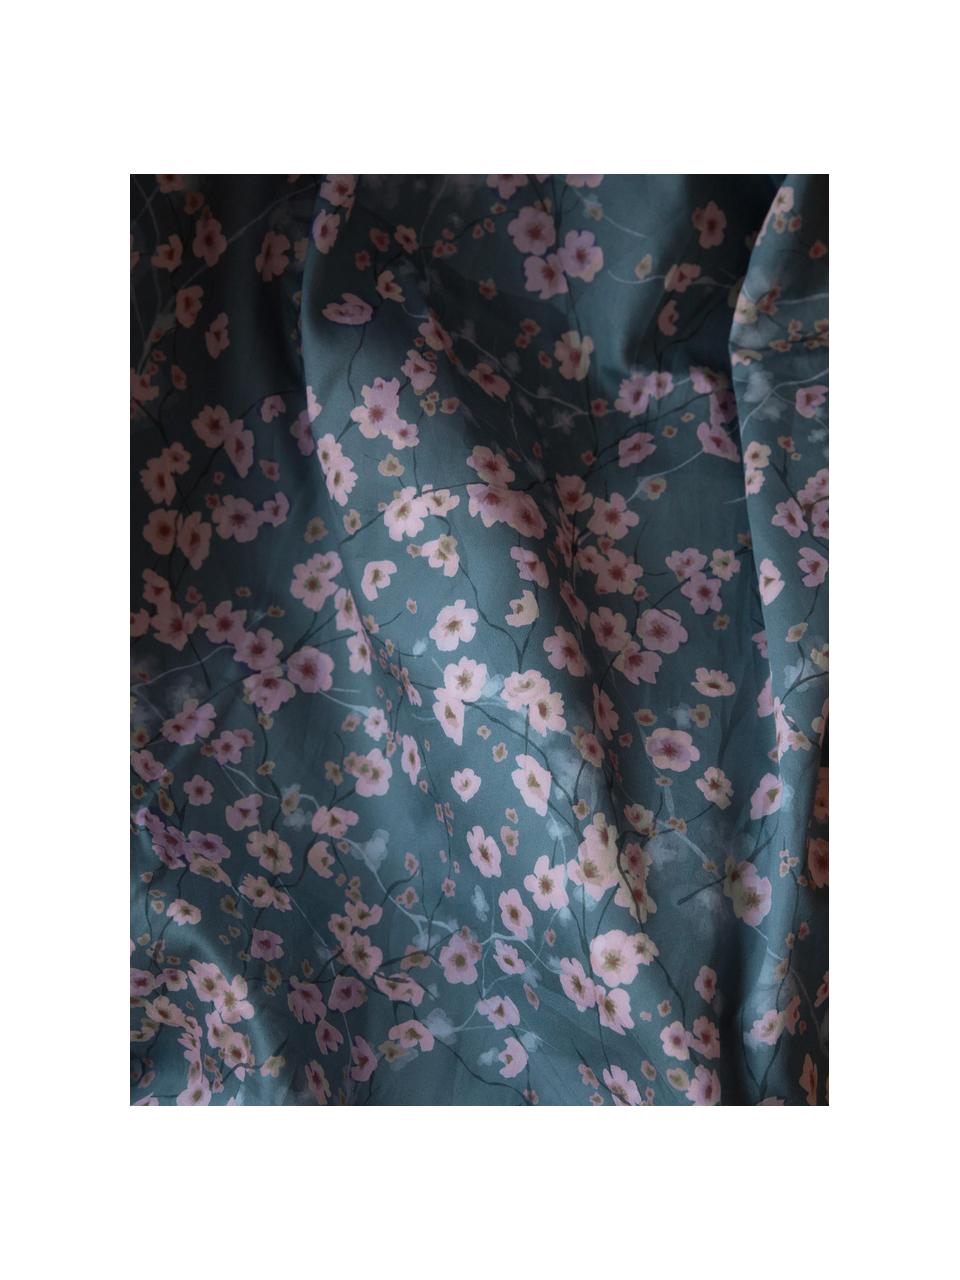 Baumwollsatin-Kopfkissenbezug Sakura mit Blumen-Print, Webart: Satin Fadendichte 250 TC,, Blau, Hellrosa, Weiß, B 40 x L 80 cm